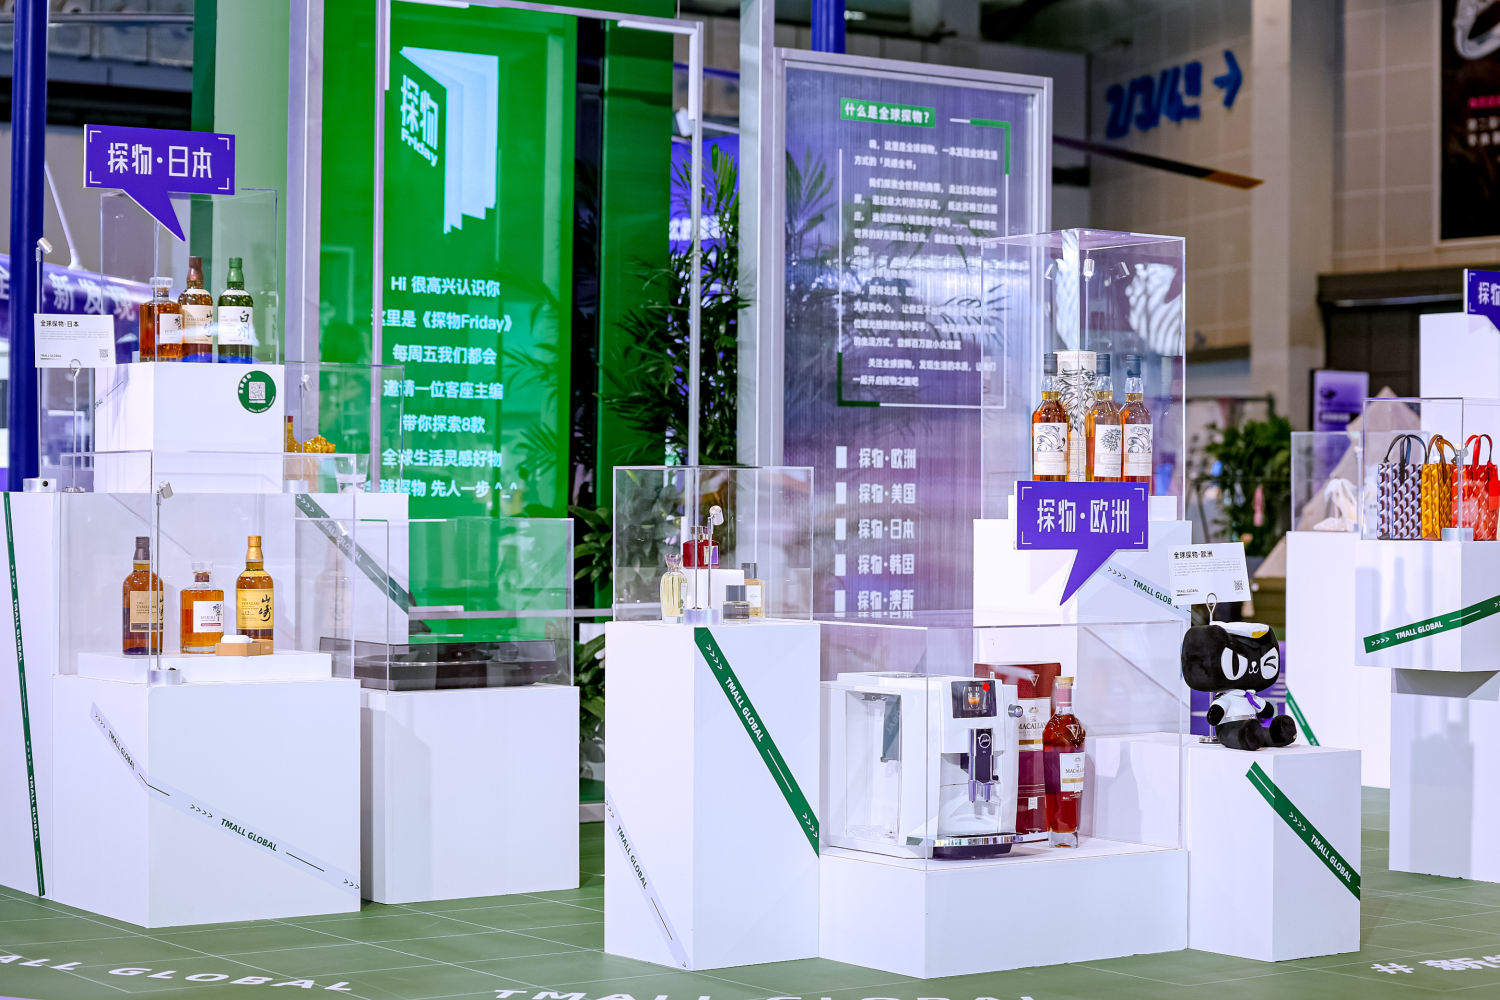 天貓國際在今年第二屆中國國際消費品博覽會展出